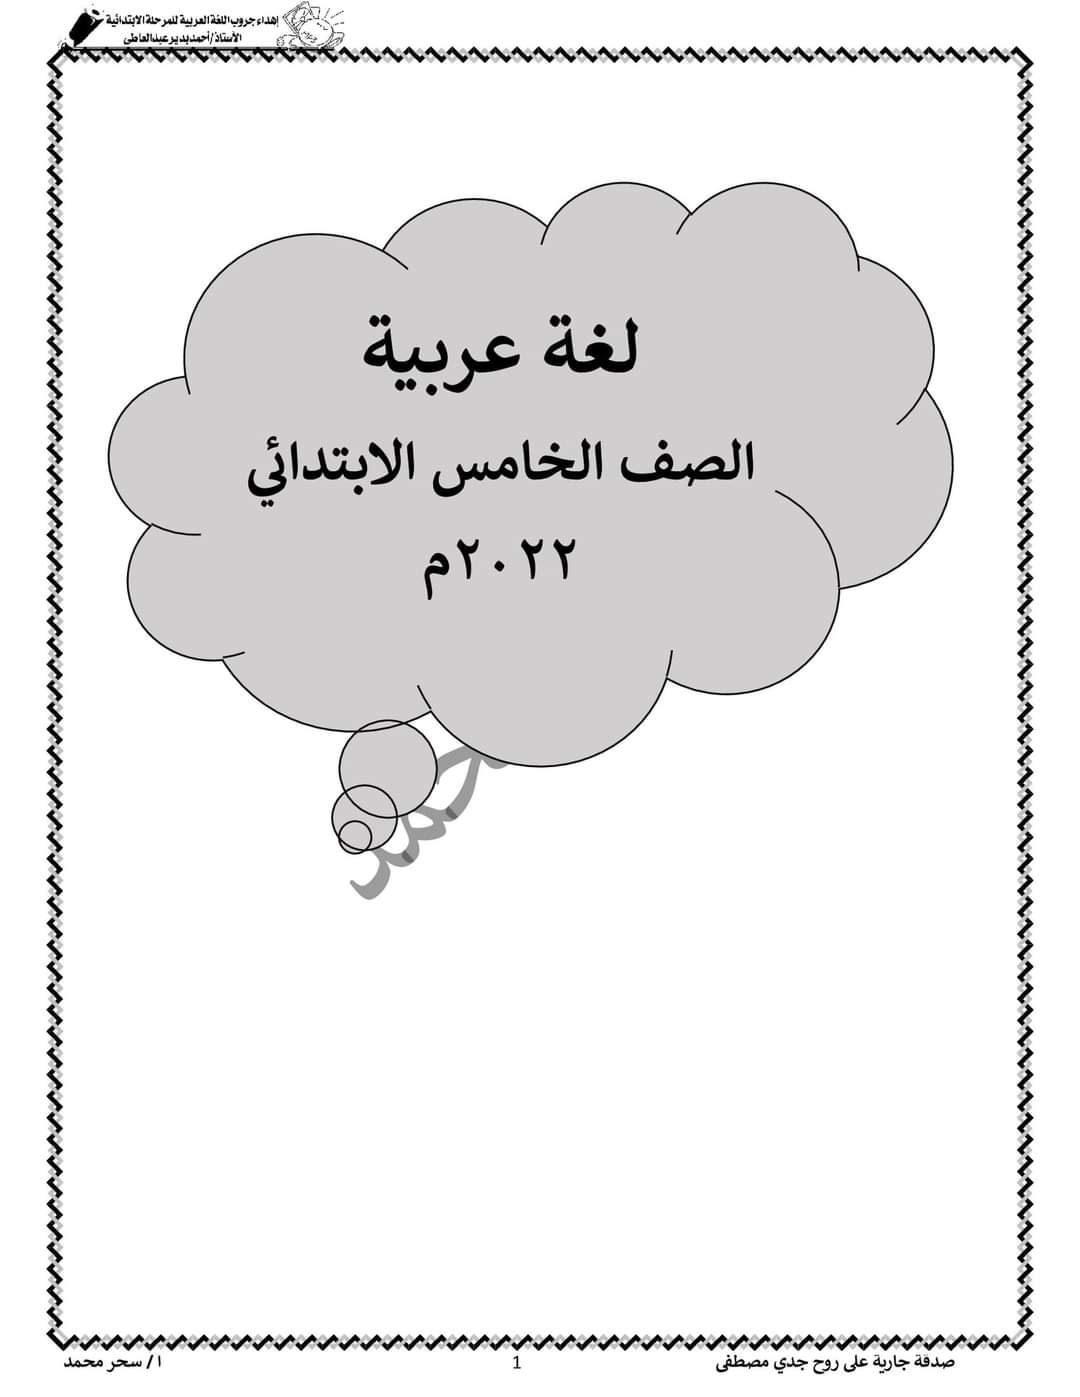 تحميل بوكليت لغة عربية خامسة ابتدائي الترم الثاني - بوكلت عربي خامسة الترم الثاني